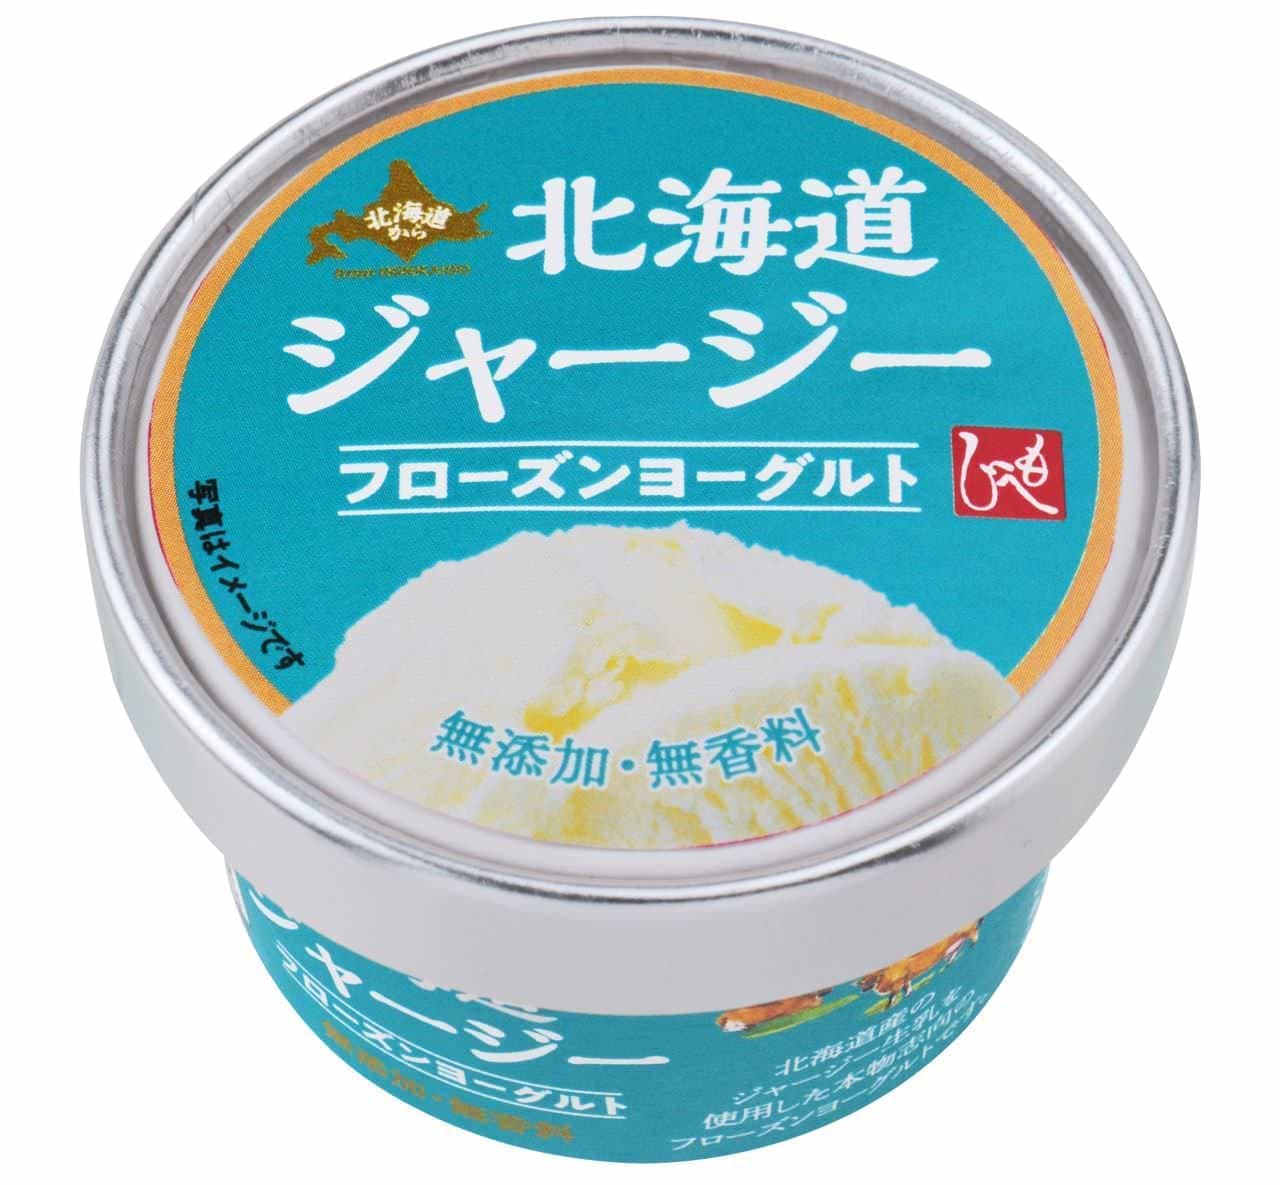 KALDI "From Moheji Hokkaido to Hokkaido Jersey Frozen Yogurt"